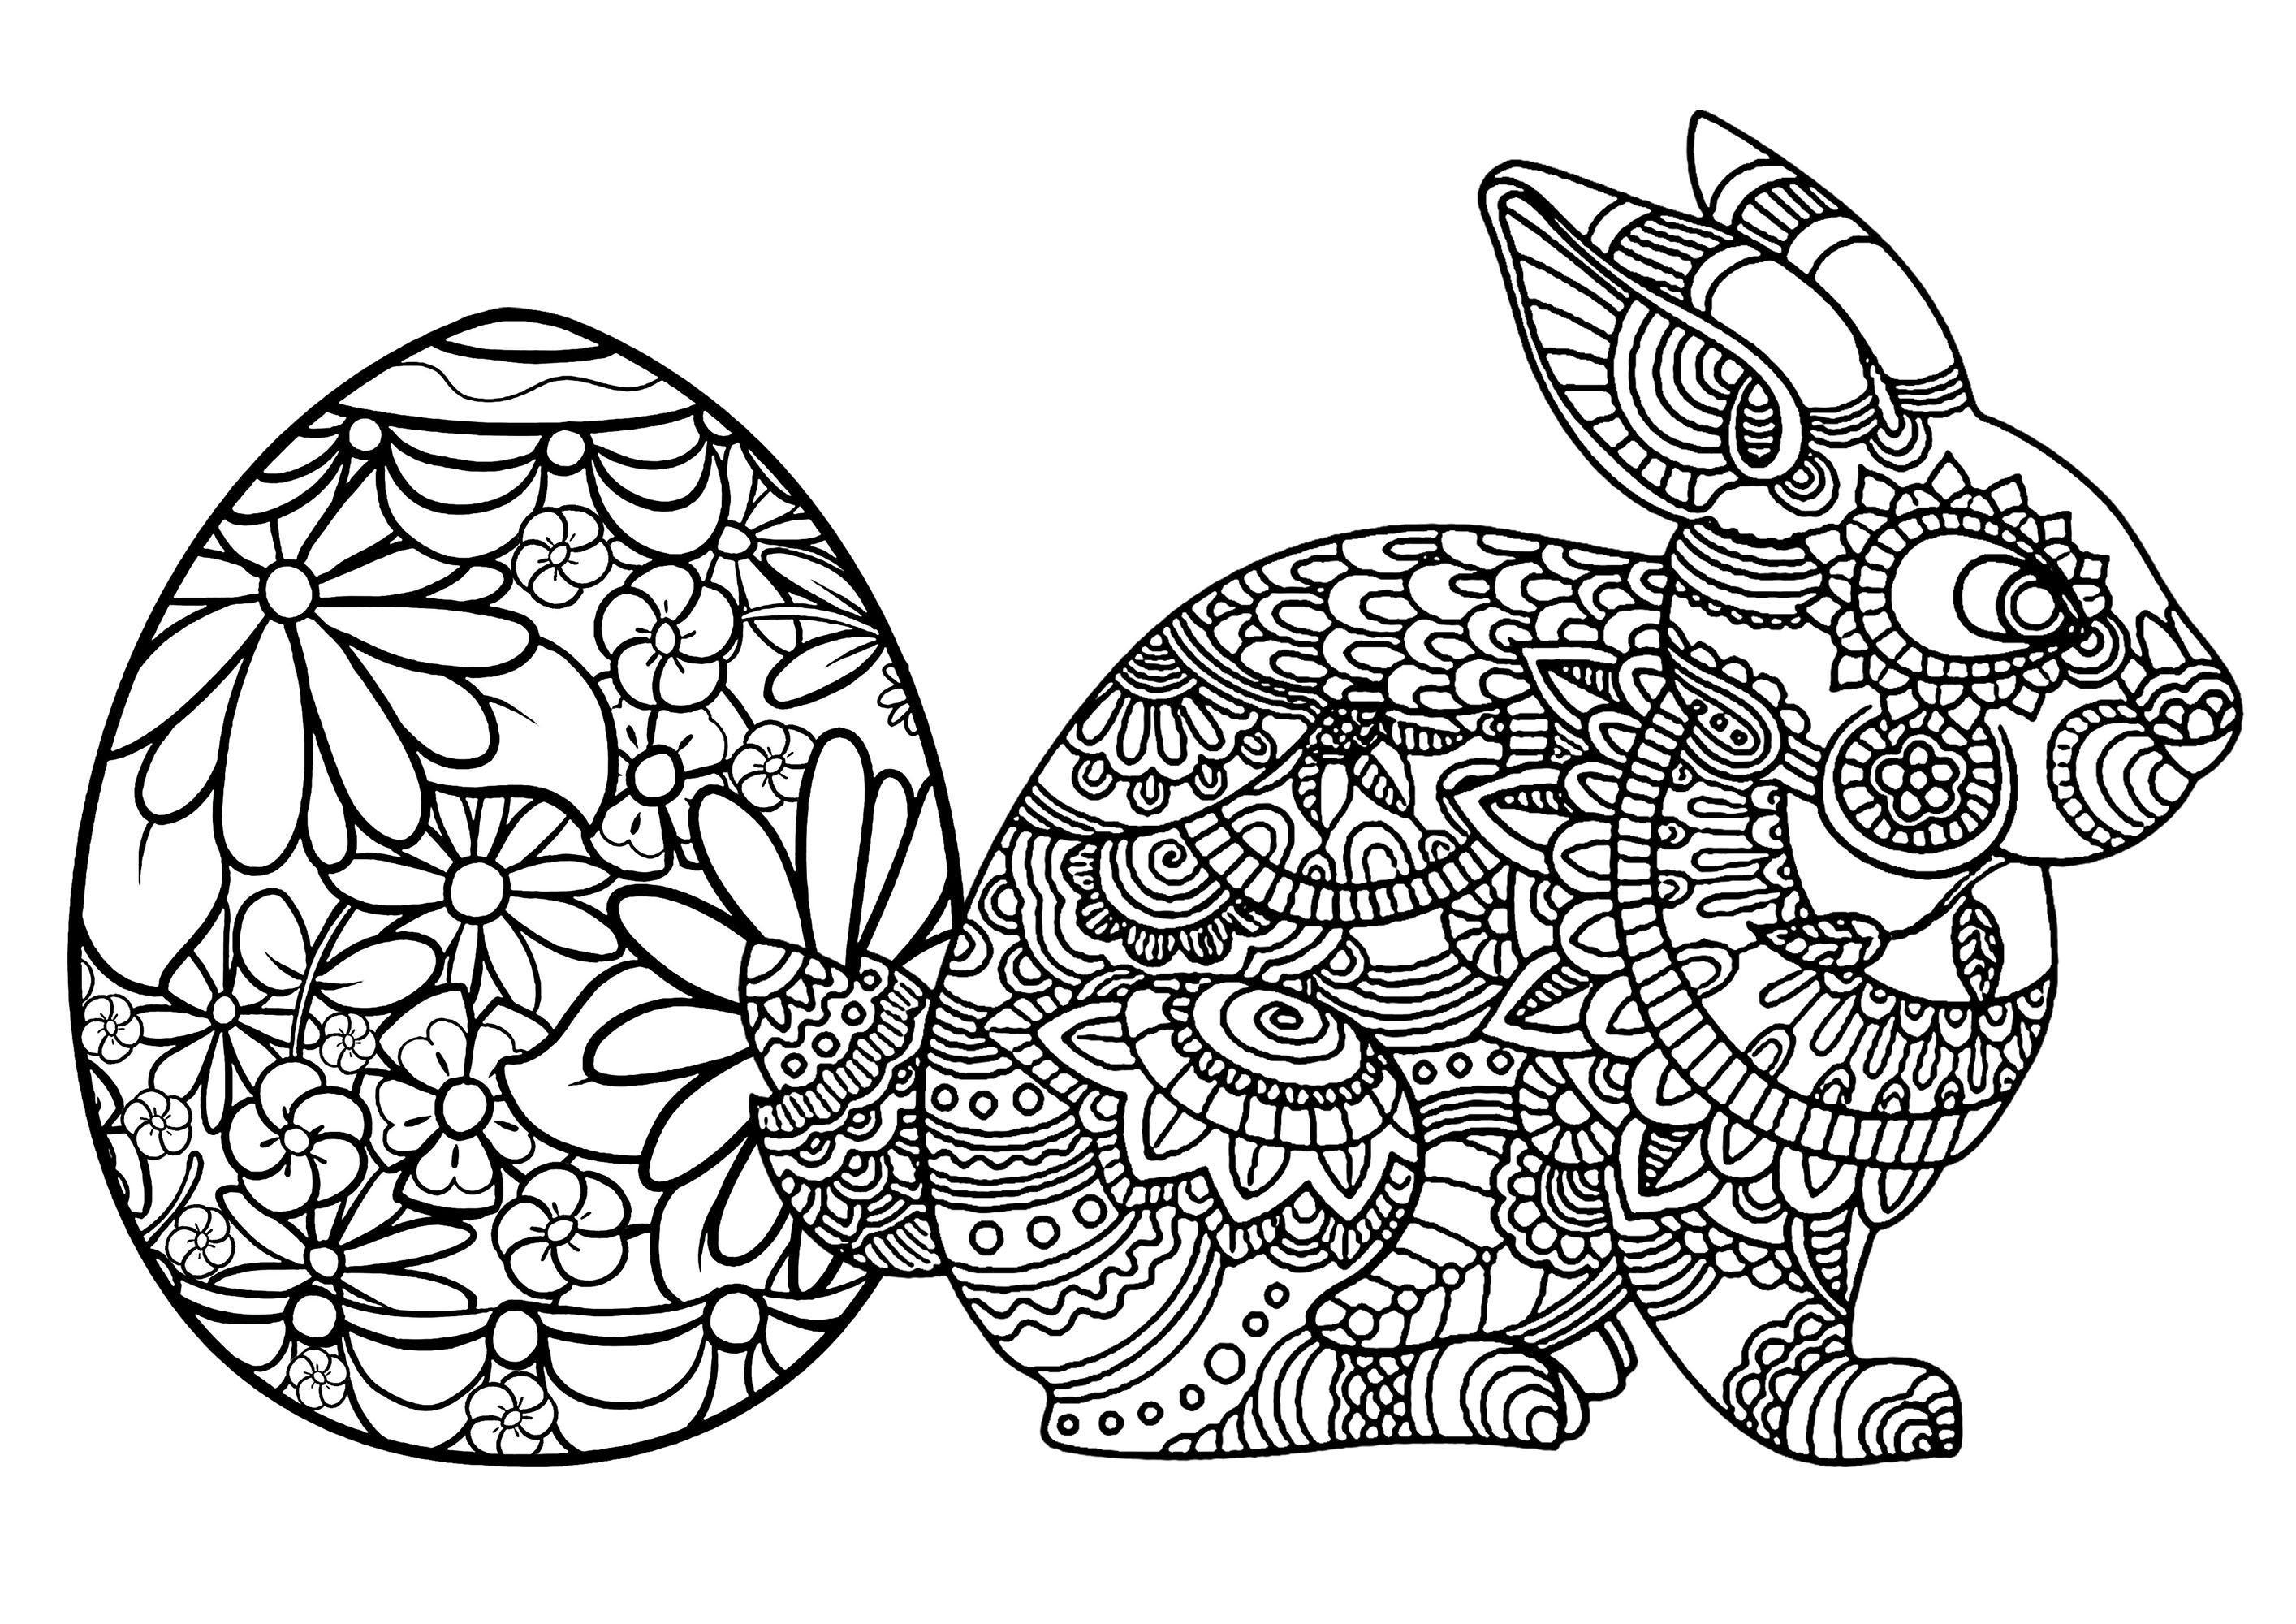 Ovo de Páscoa e coelho. Muitos pormenores para colorir nos dois temas desta bonita página para colorir, Artista : Art'Isabelle